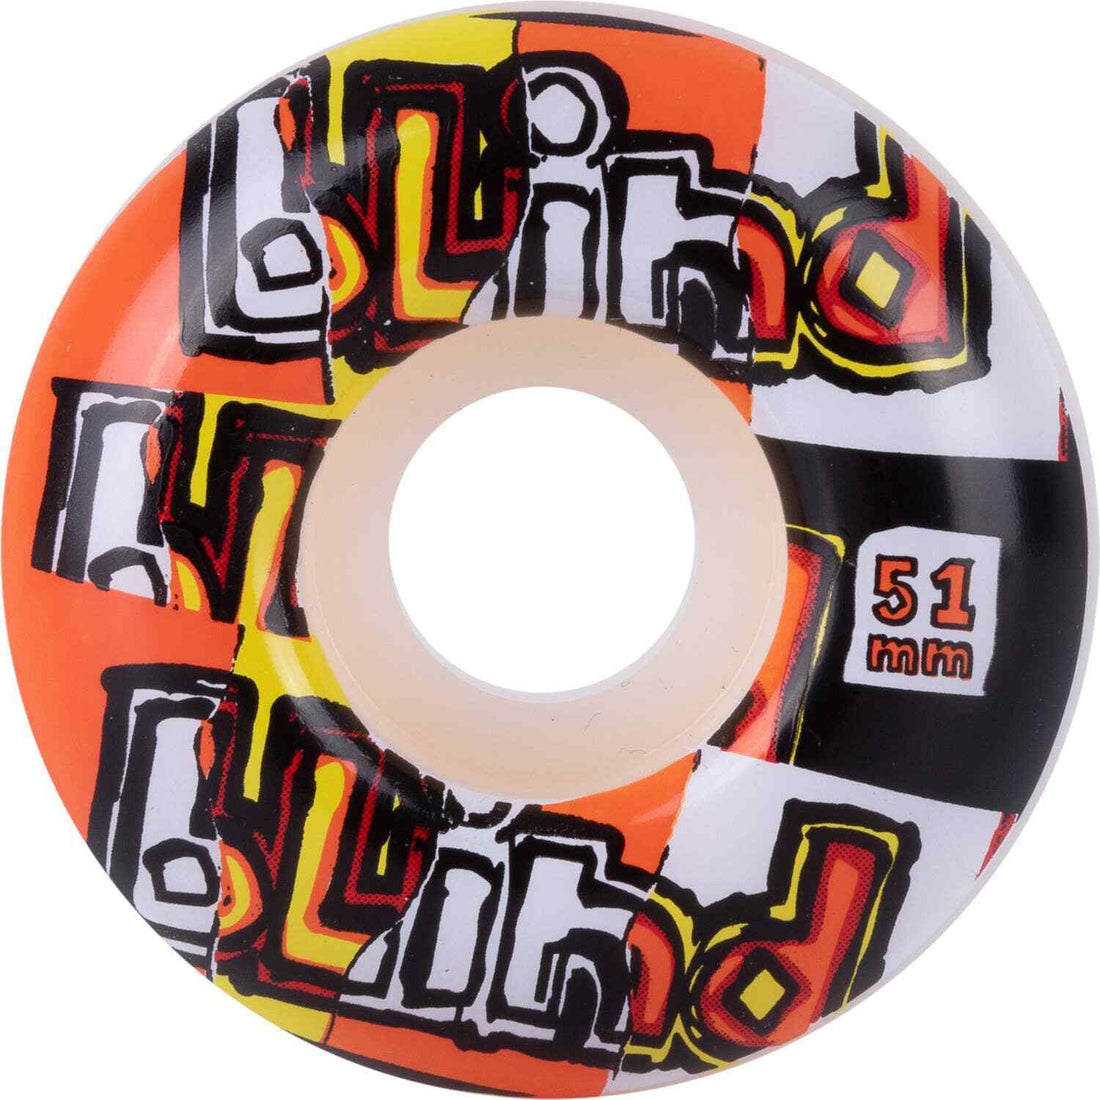 Blind OG Ripped Skateboard Wheels - Red/Orange 51mm